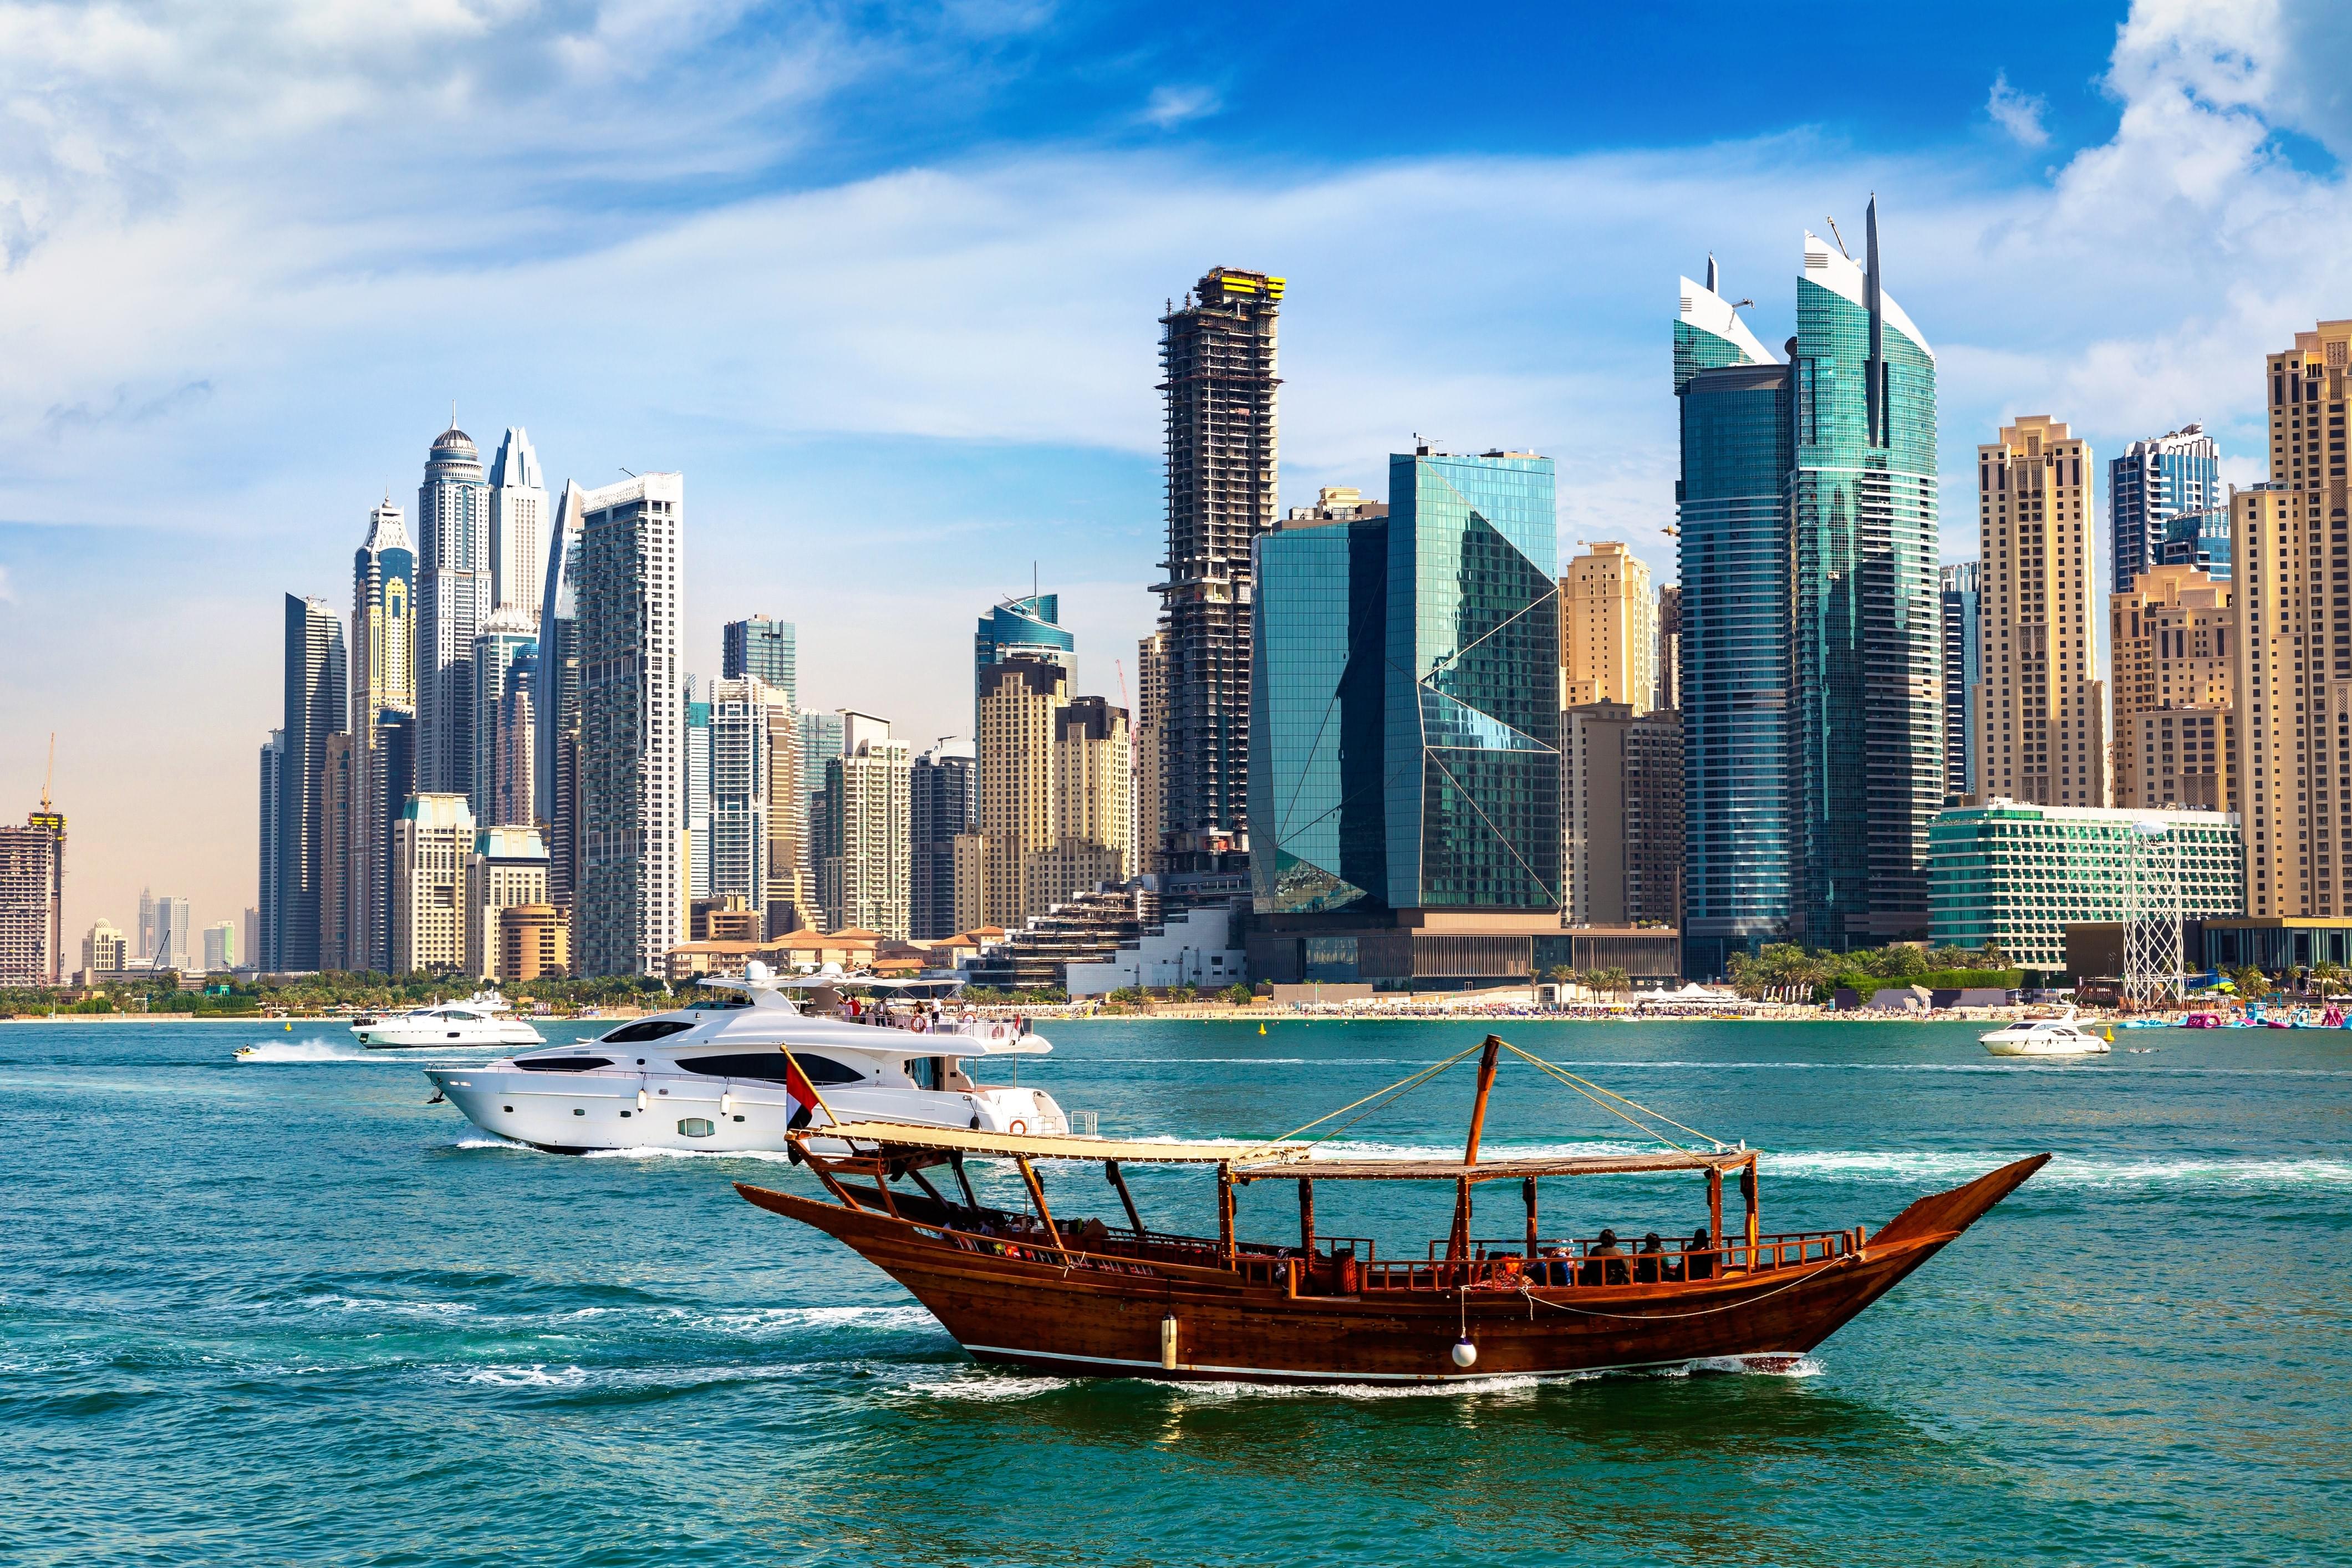 Dhow Marina Cruise with iconic landmarks of Dubai